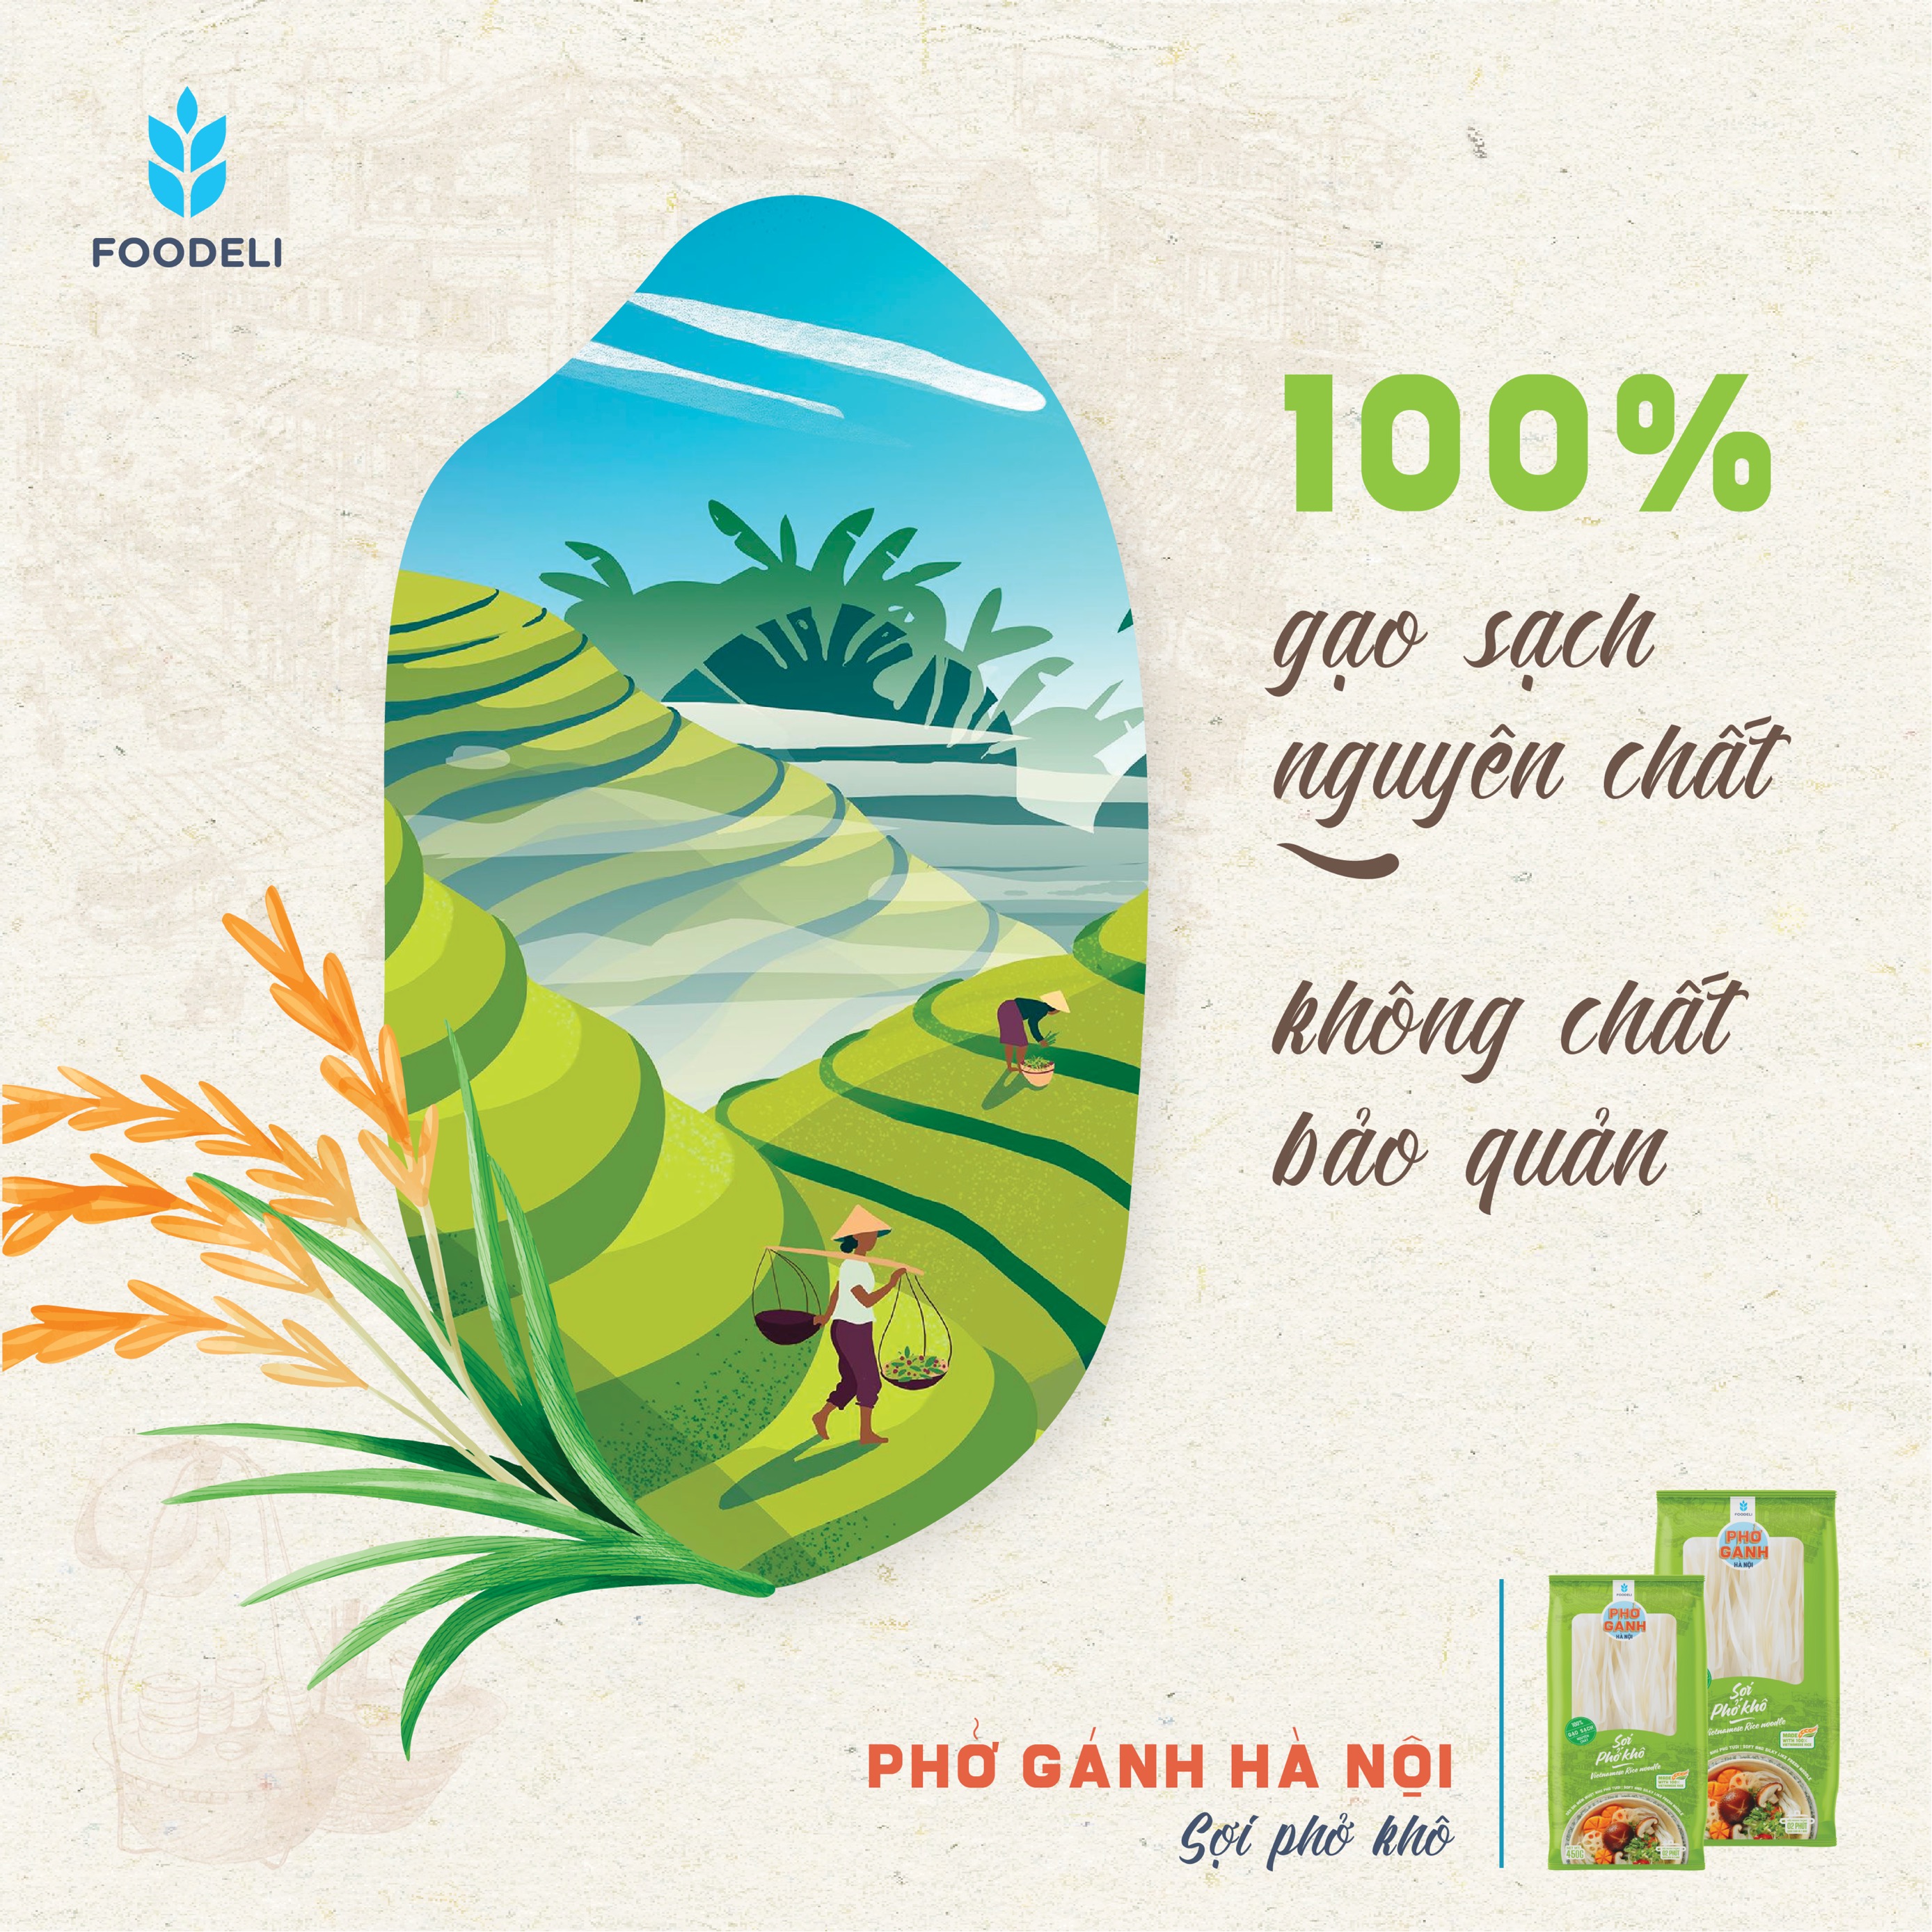 Phở Gánh Hà Nội Sợi Phở Phở Khô 100% từ gạo nguyên chất (Gói 200gr)